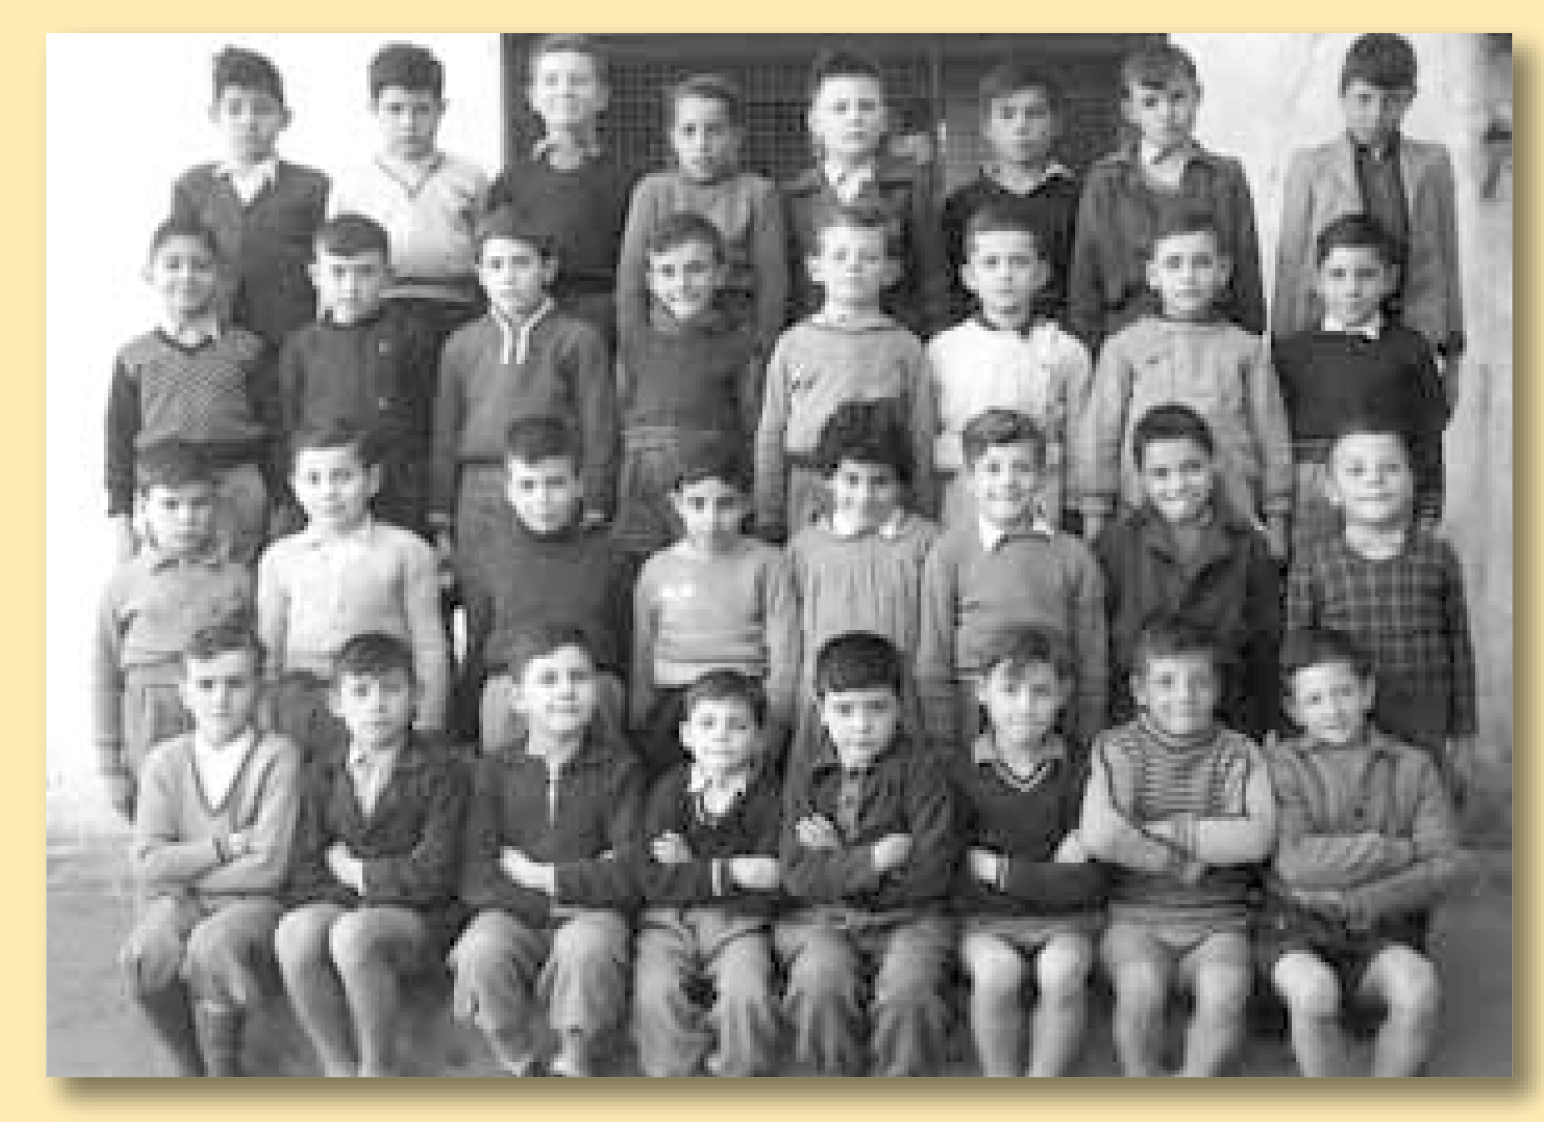 École primaire de l'EN - 1953